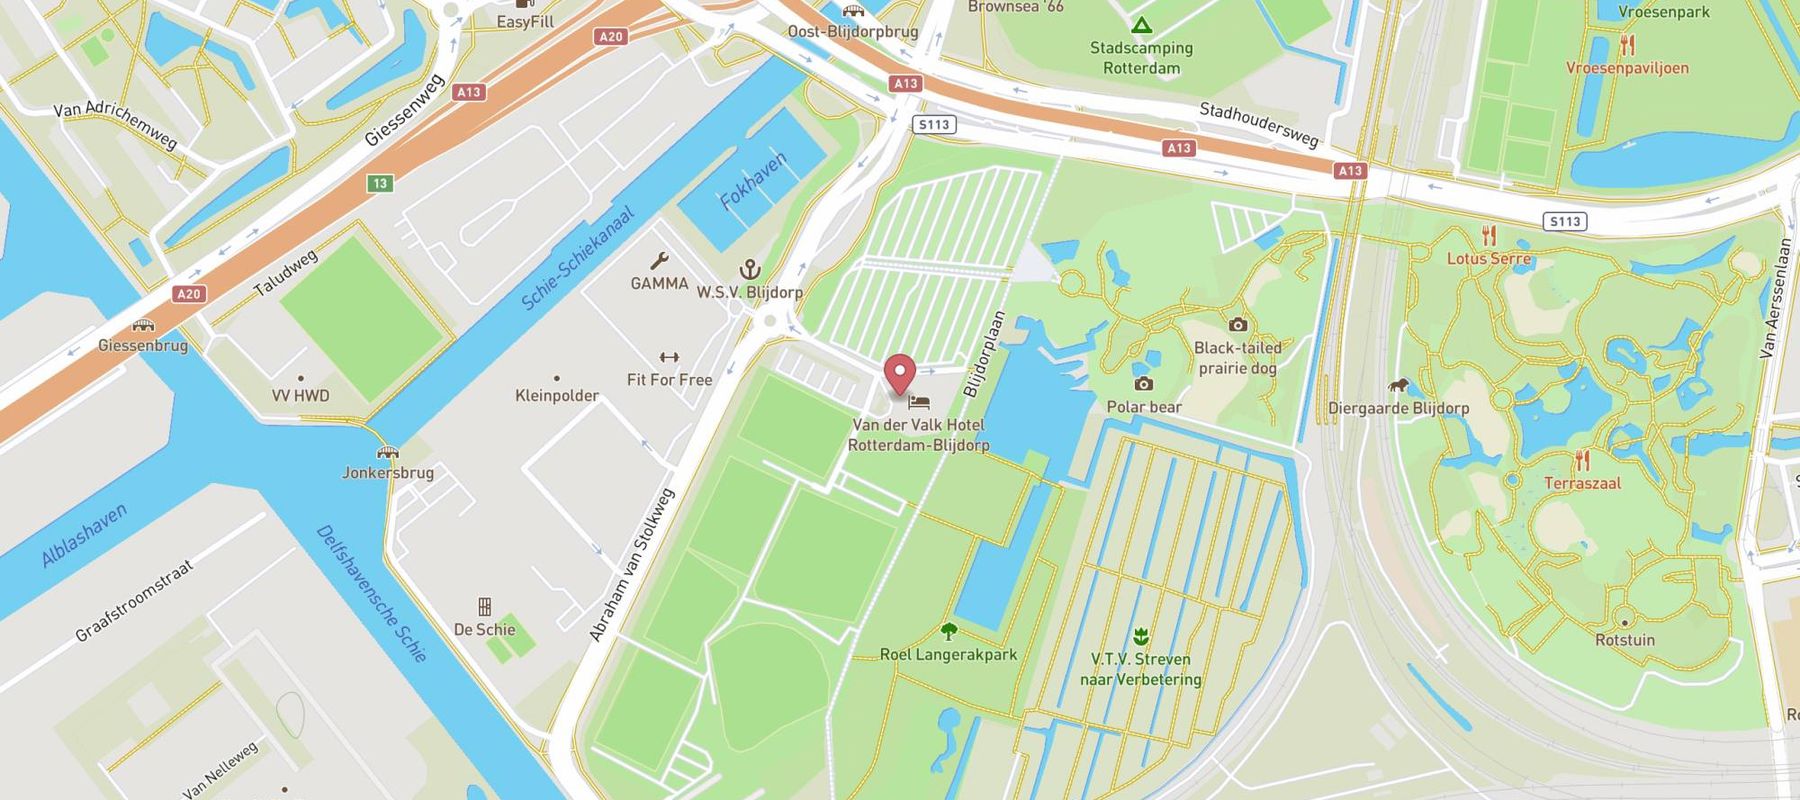 Van Der Valk Hotel Rotterdam - Blijdorp map